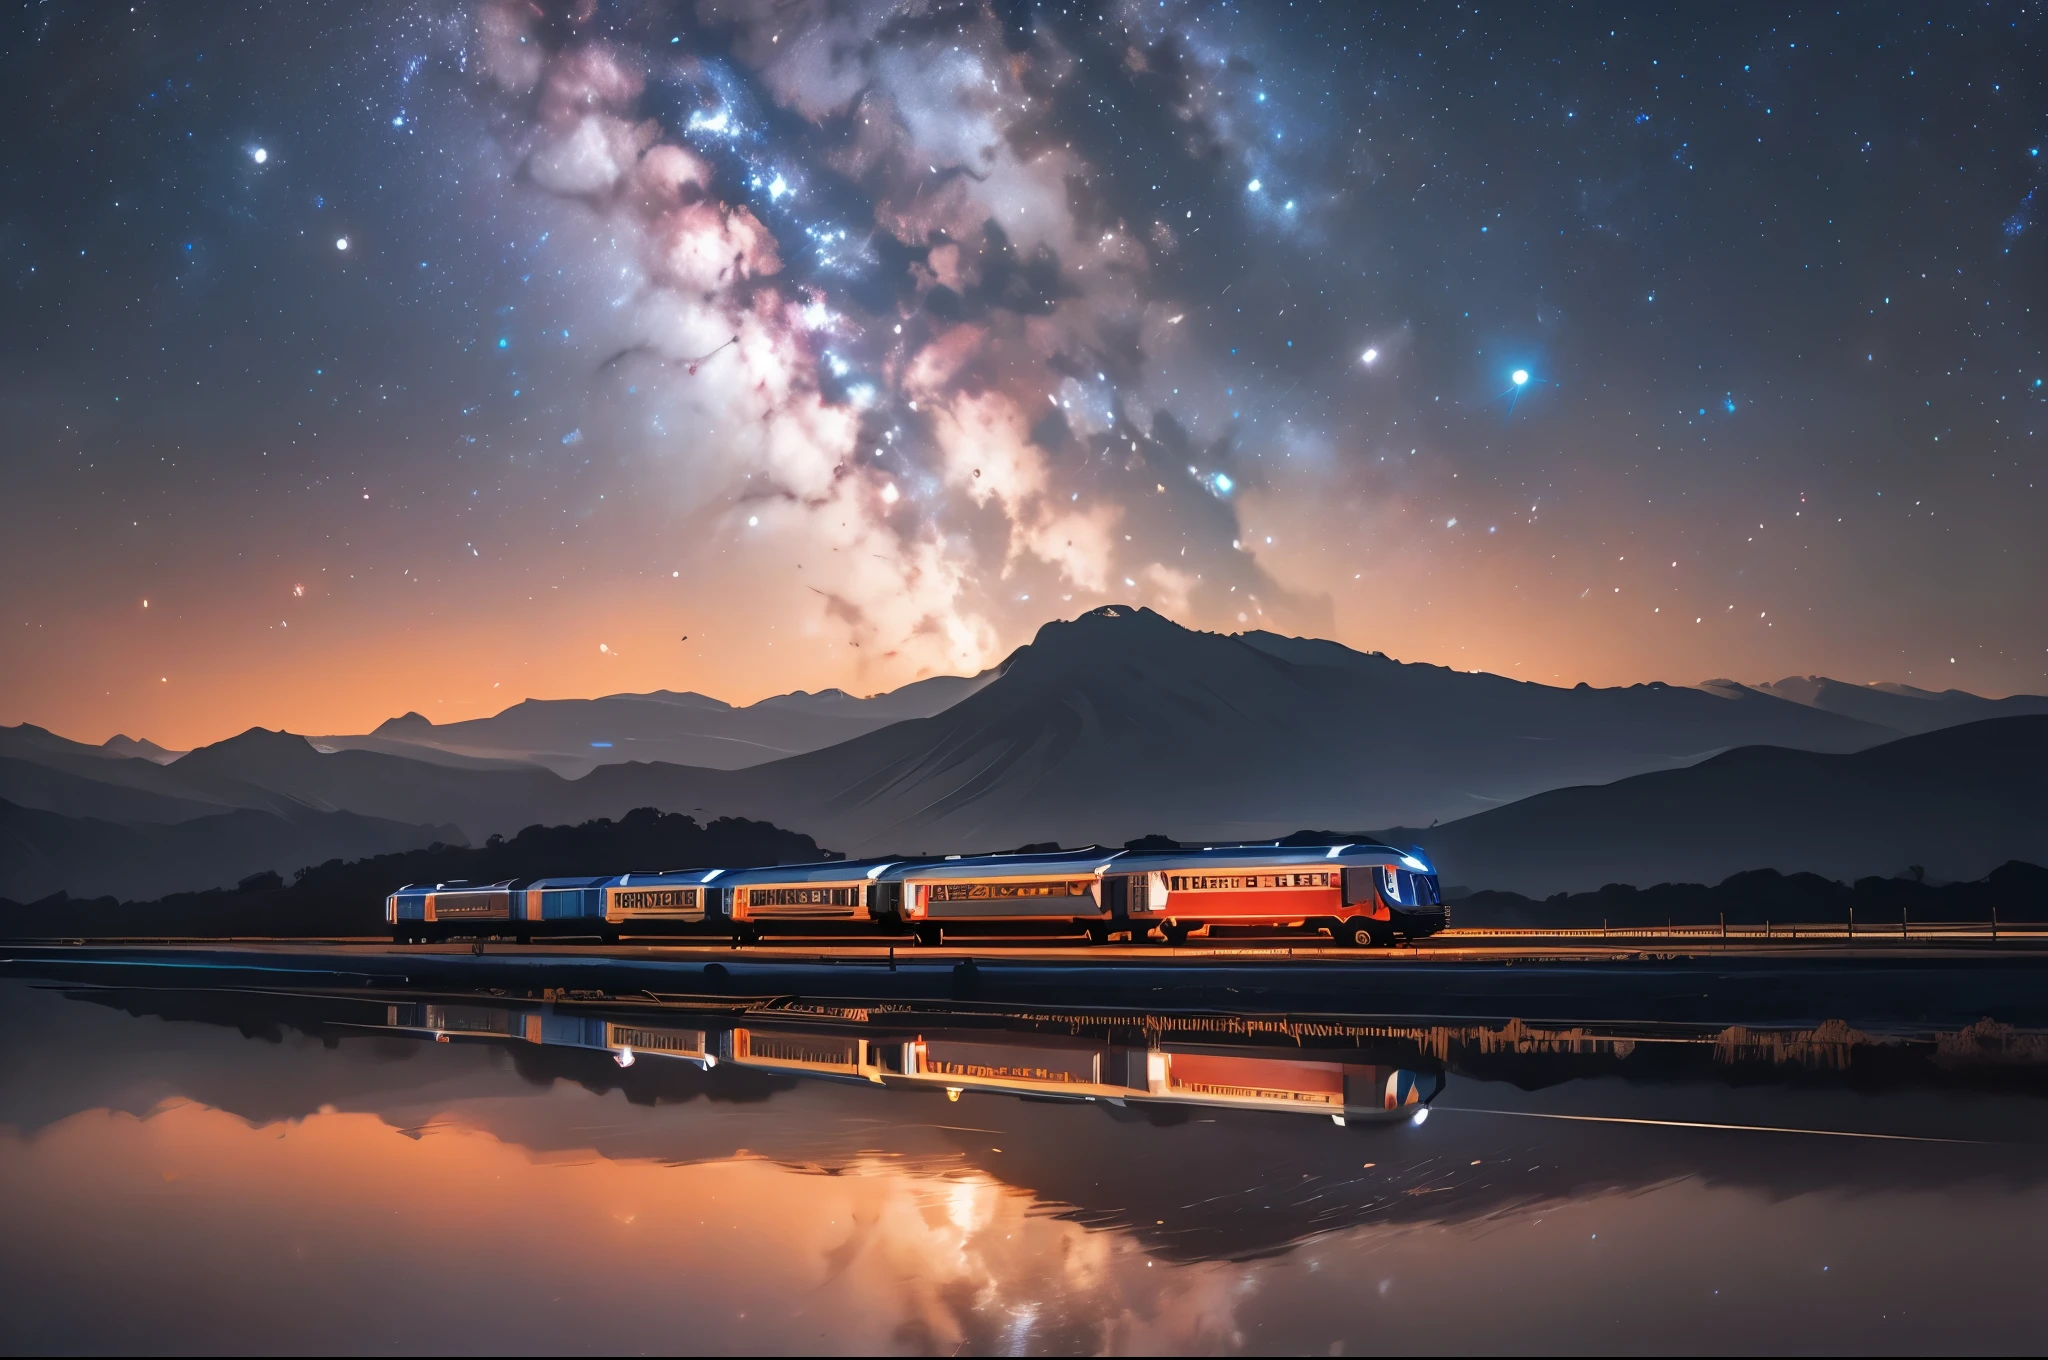 /我晚上, 火车在广阔的盐湖上行驶, 反映火车, 银河和星空. 正面和侧面视图, 高清, 摄影风格, 广角镜头角度, 对称构图, 自然光, 壮观的景色
